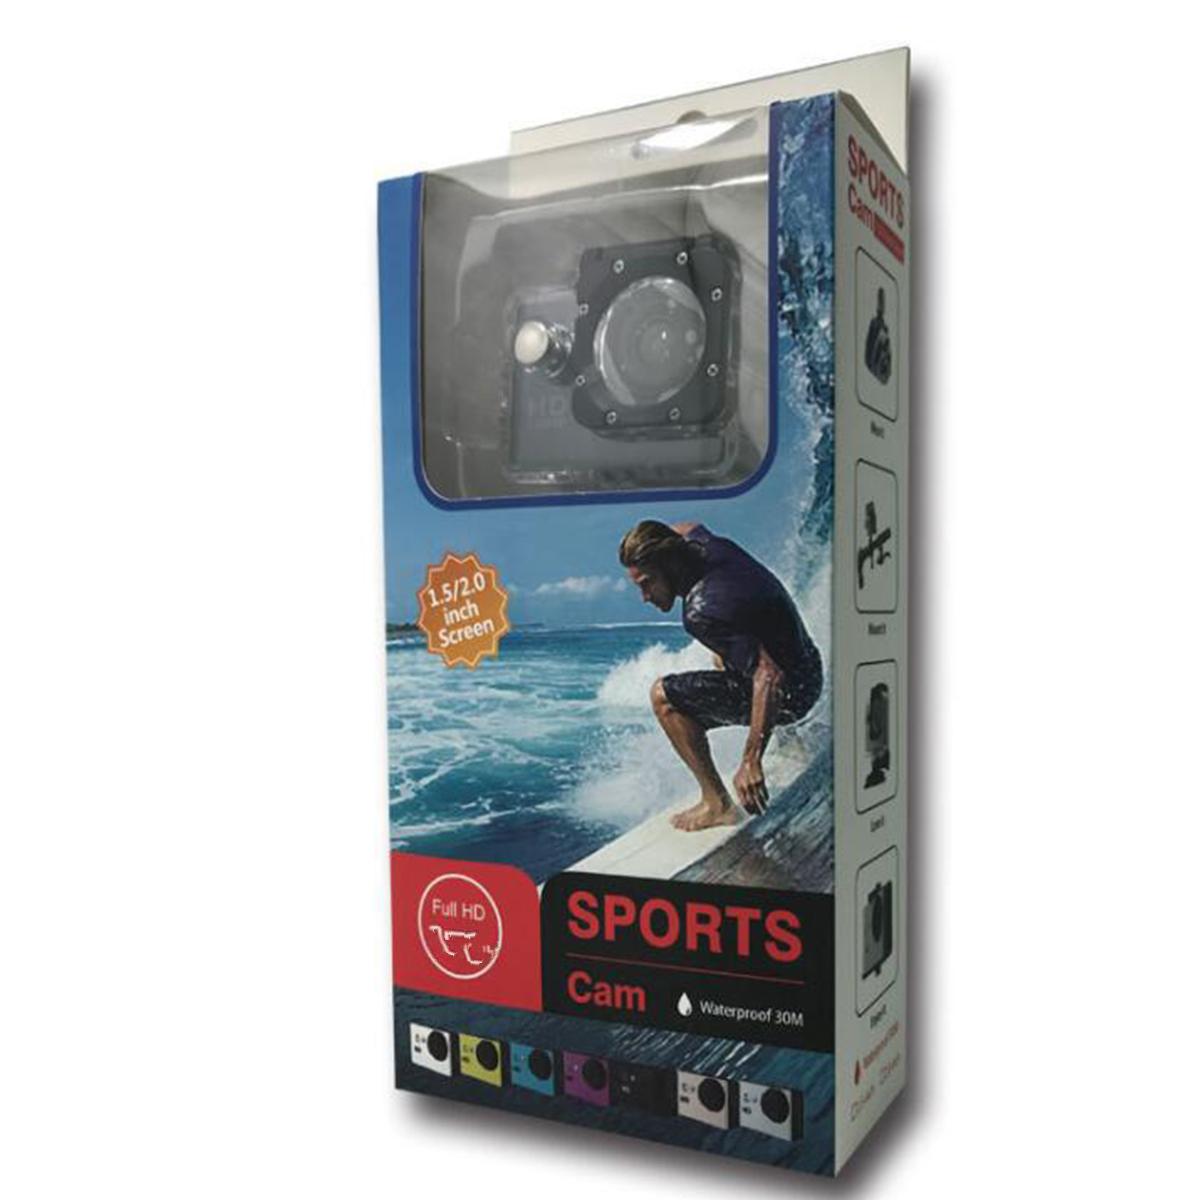 Hành động thể thao ngoài trời Mini máy ảnh dưới nước Máy ảnh chống nước màn hình màu nước chống nước giám sát video cho máy ảnh nước